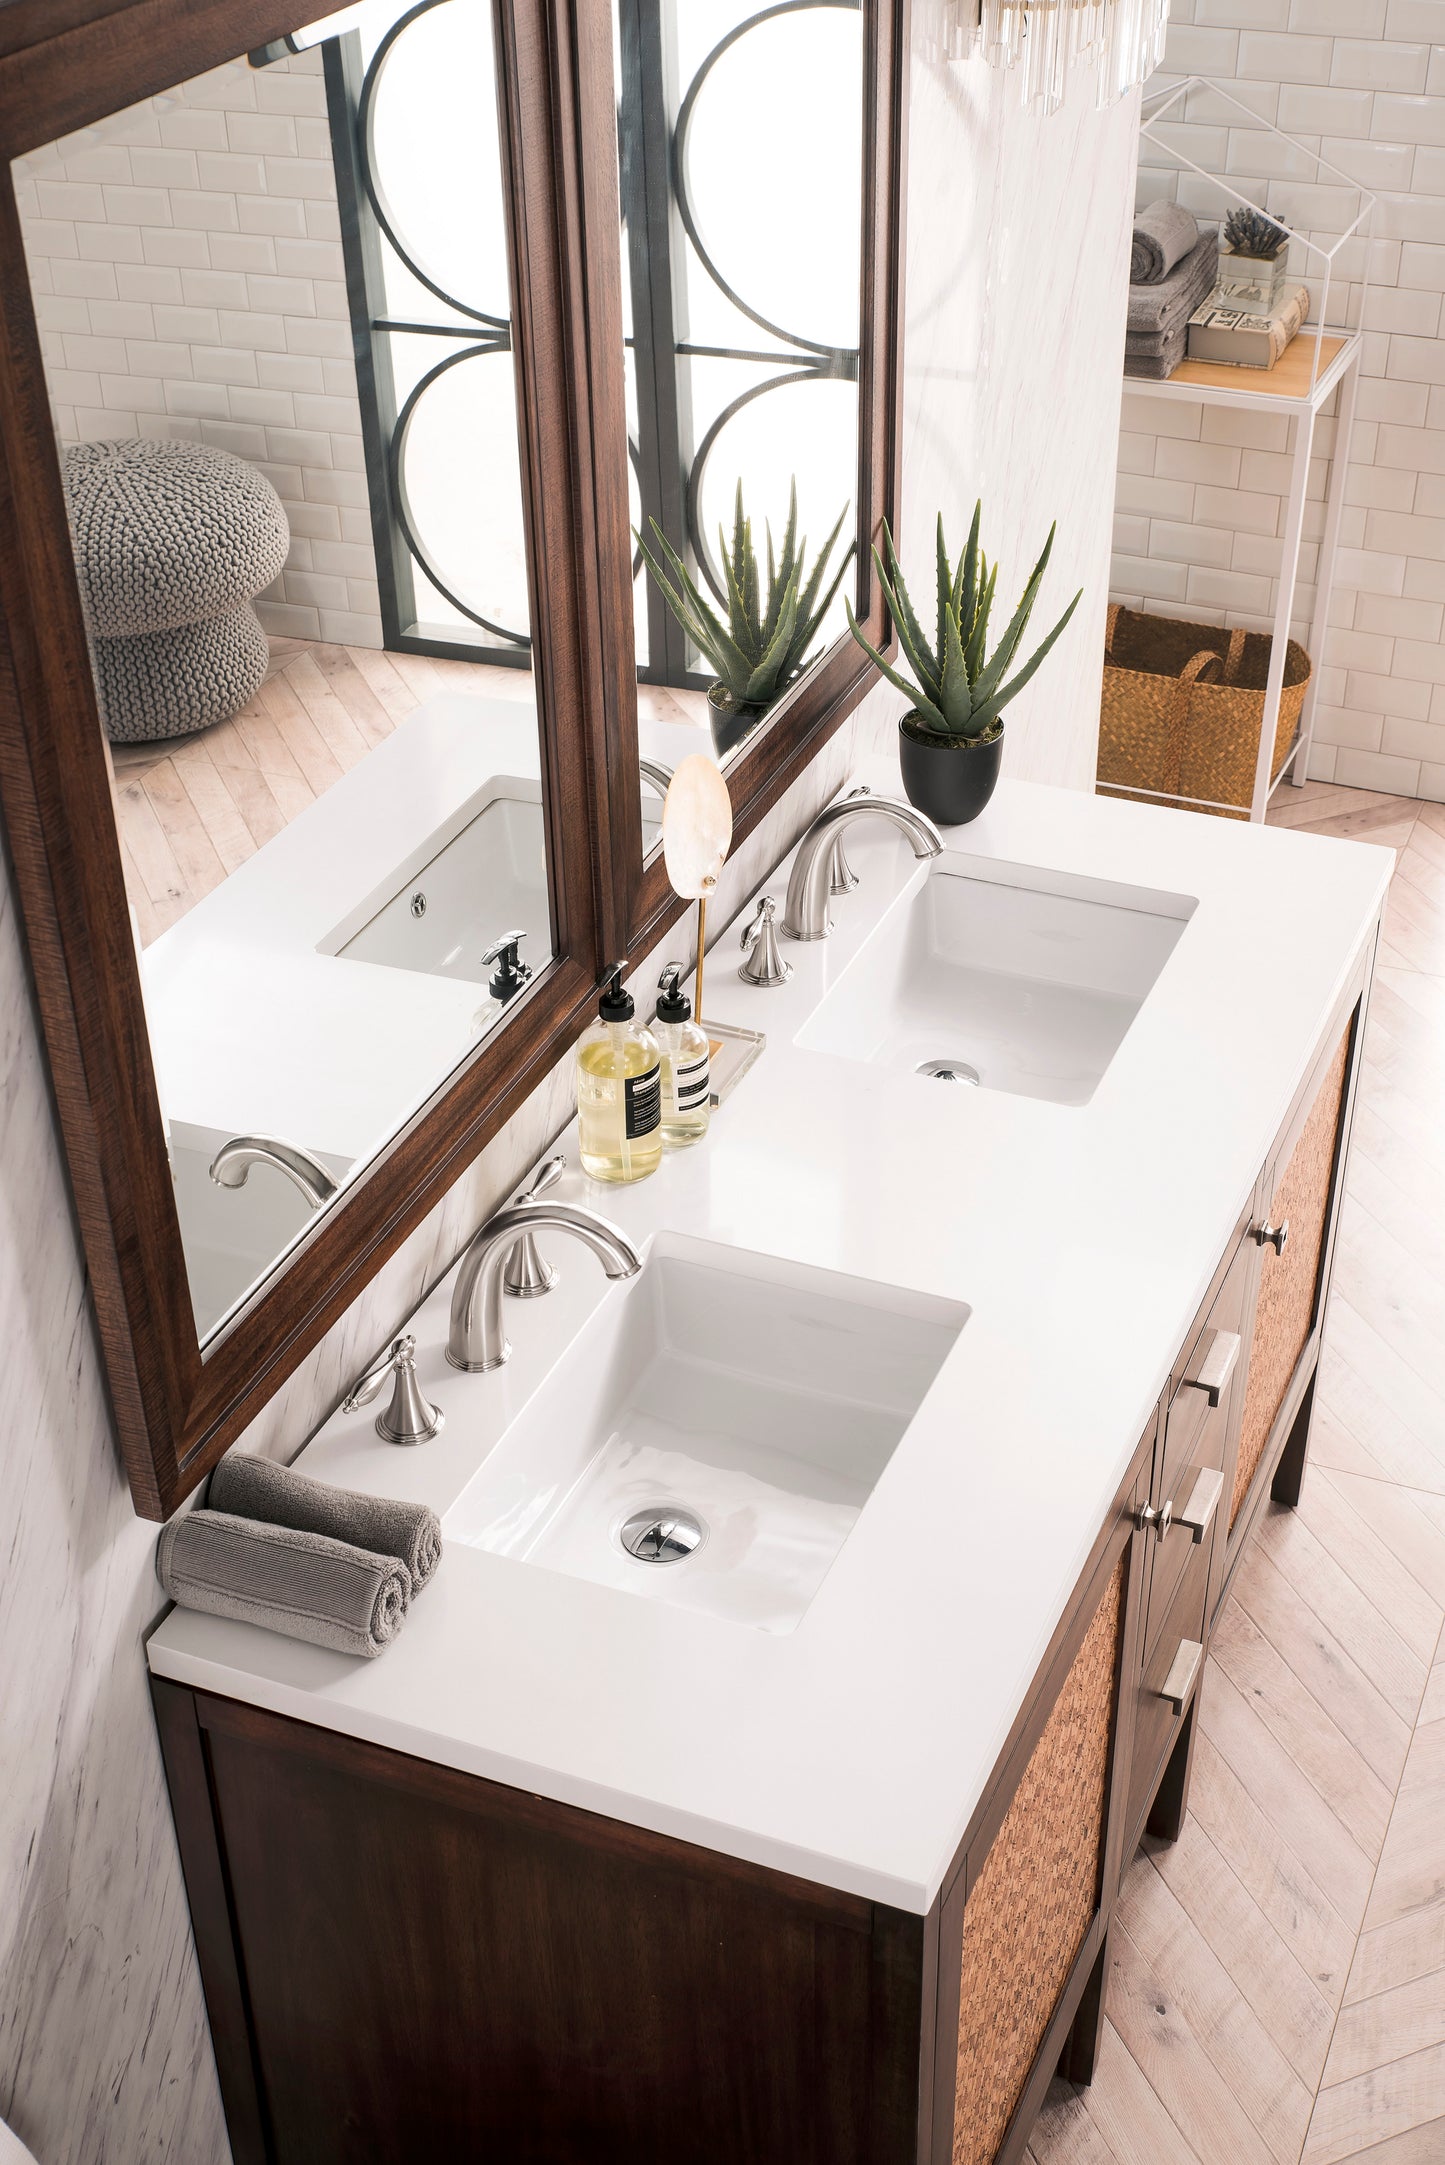 James Martin Addison 60" Double Vanity Cabinet with 3 CM Countertop - Luxe Bathroom Vanities